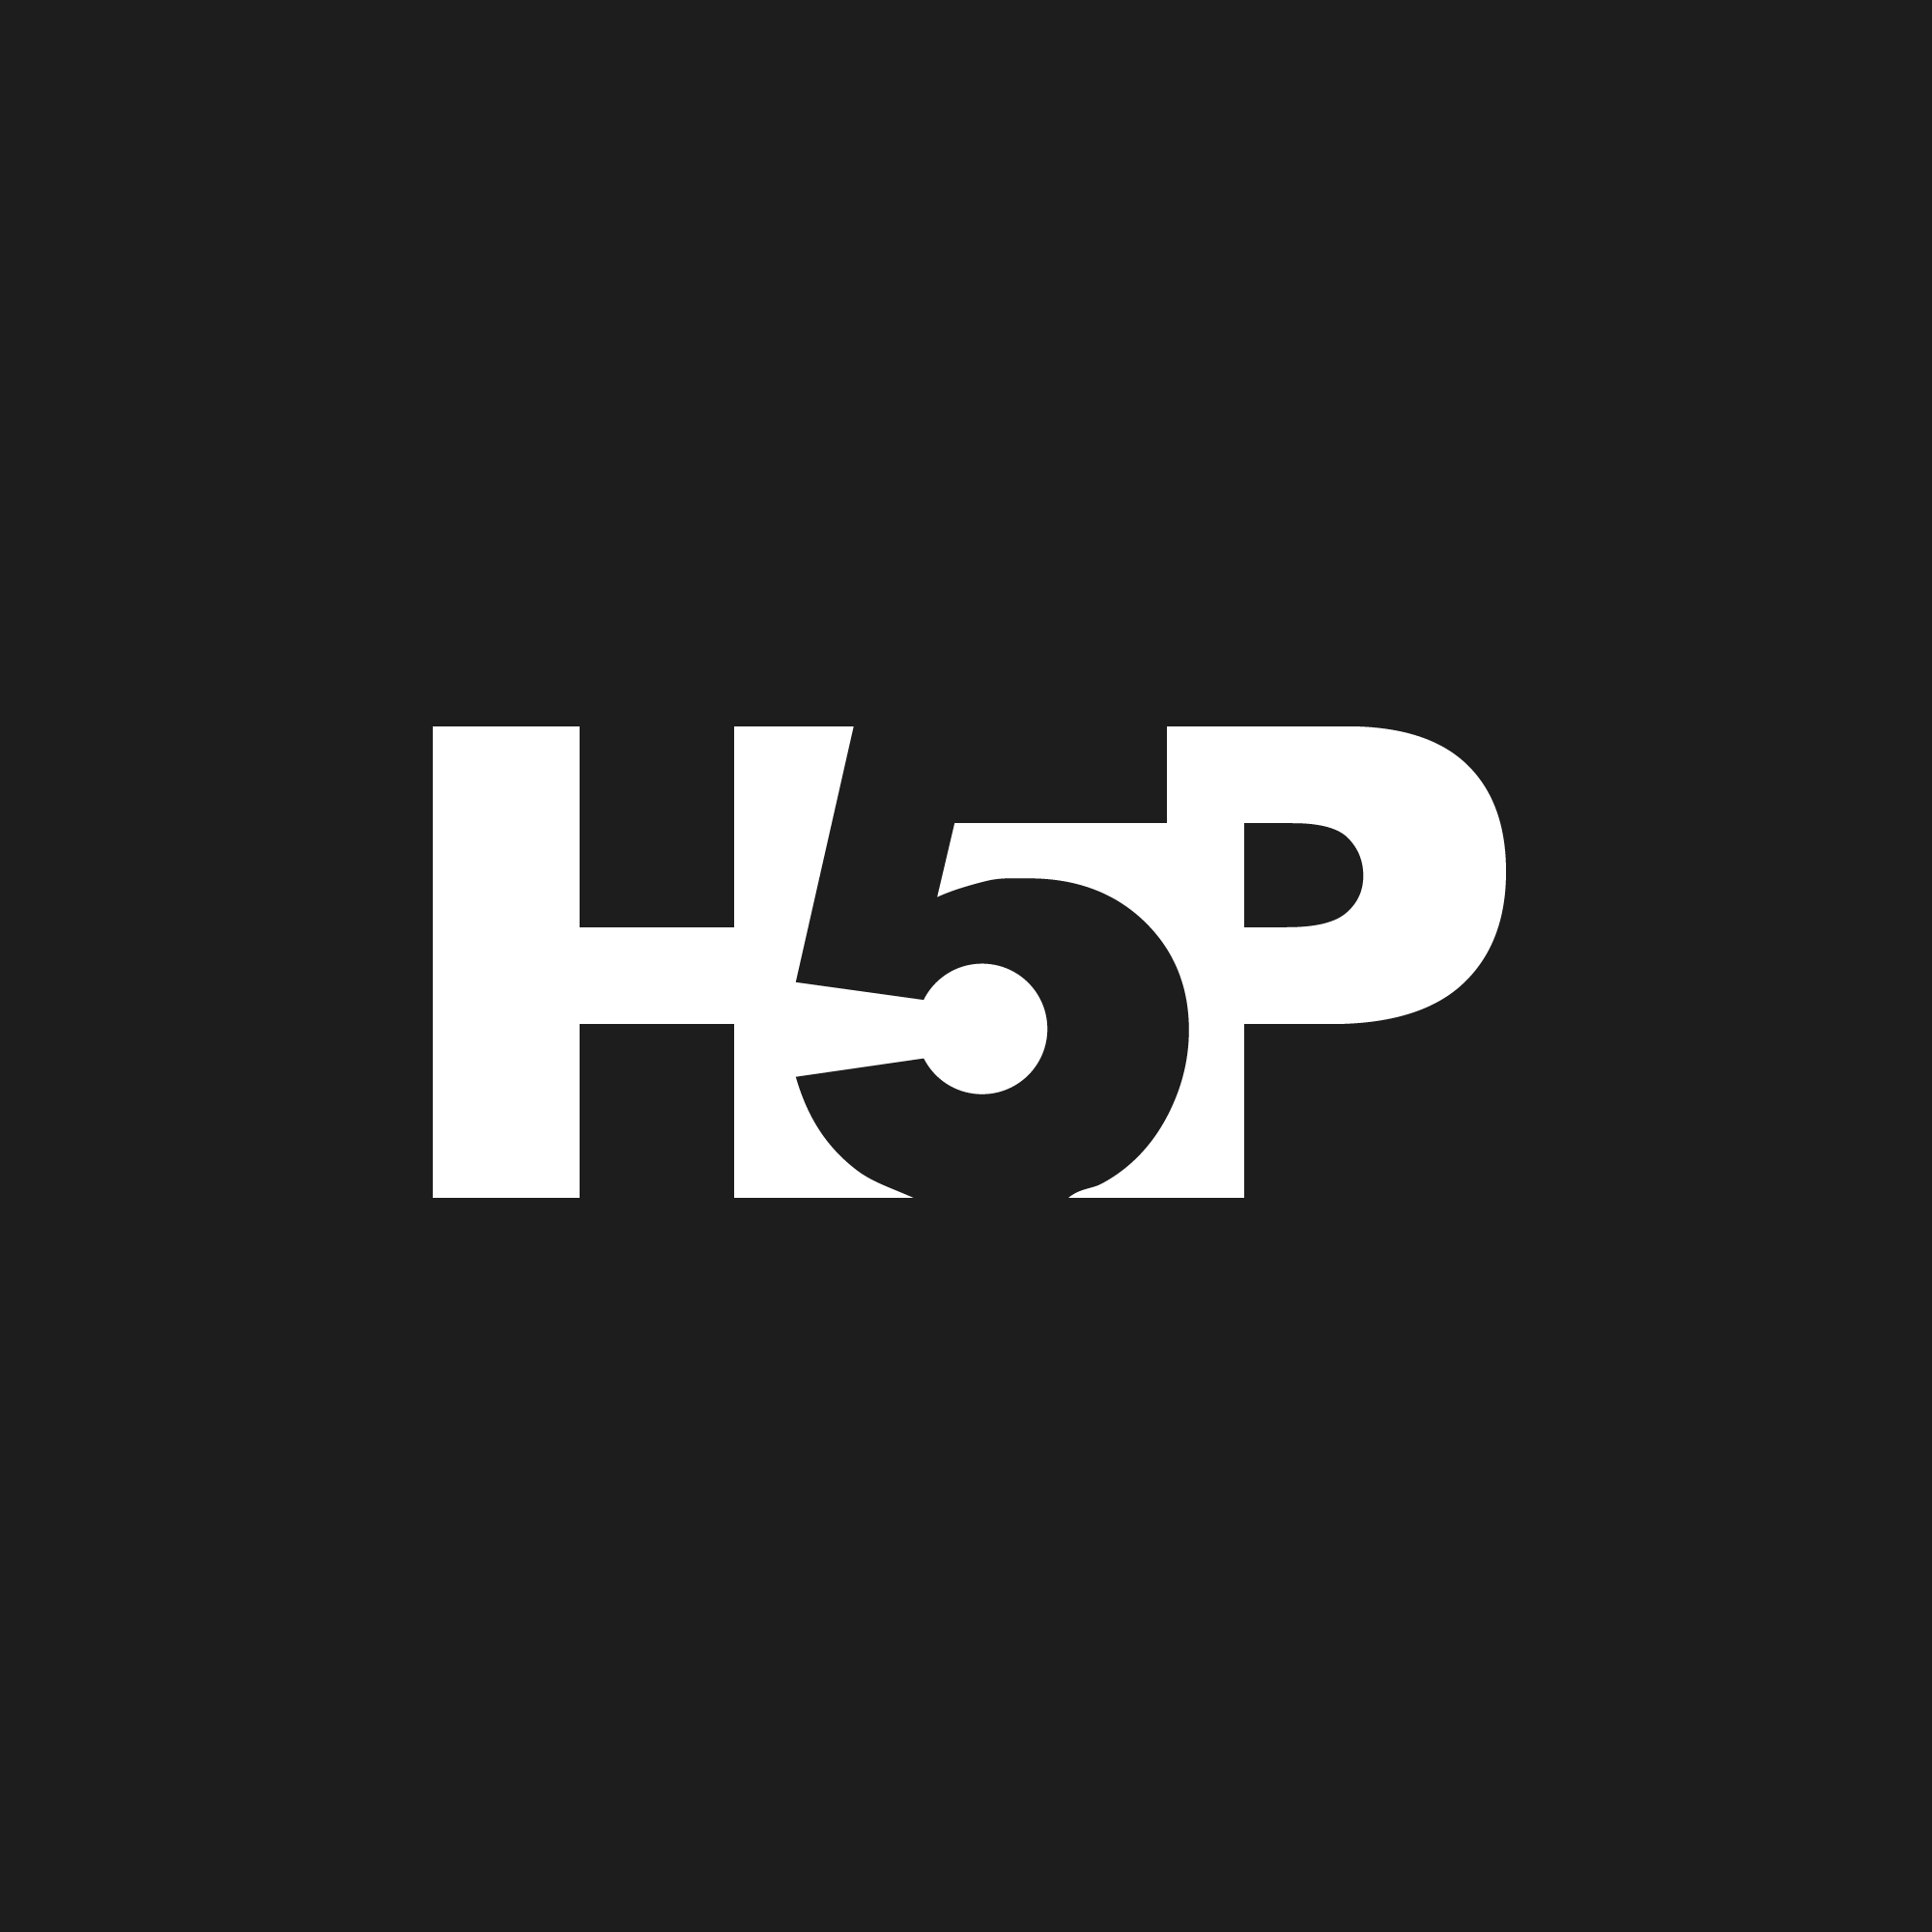 https://h5p.org/sites/default/files/h5p-logo-black-1000px.png